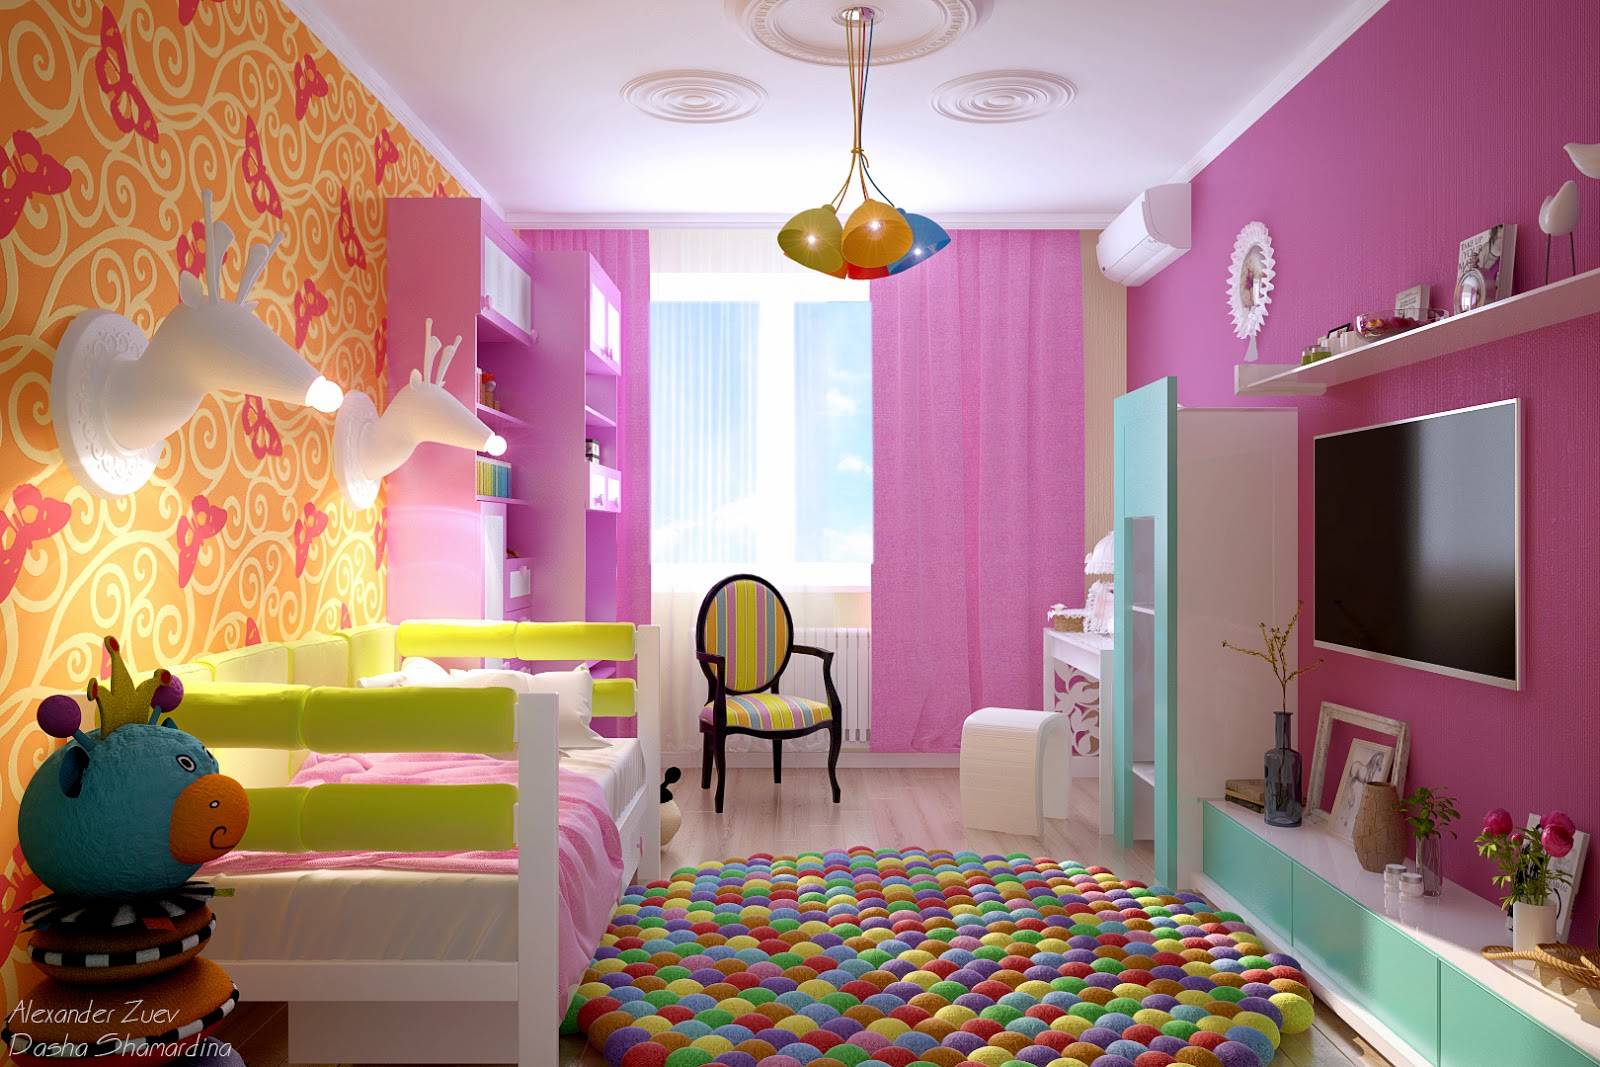 Дизайн комнаты для девушки: стили, зонирование, цвет - 75 фото